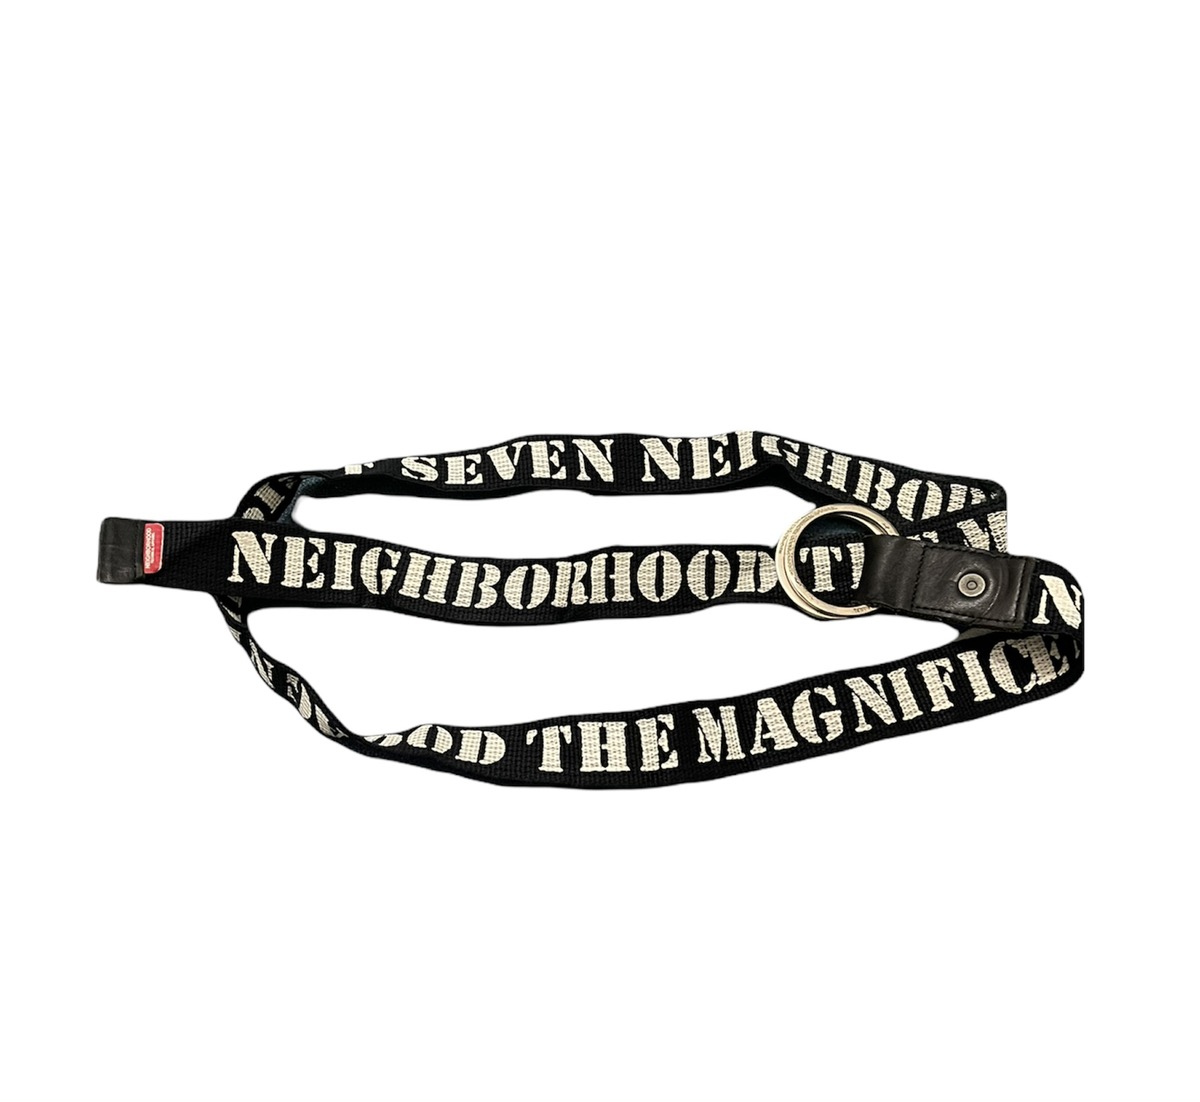 Neighborhood belt nbhd the magnificent seven belt - 2